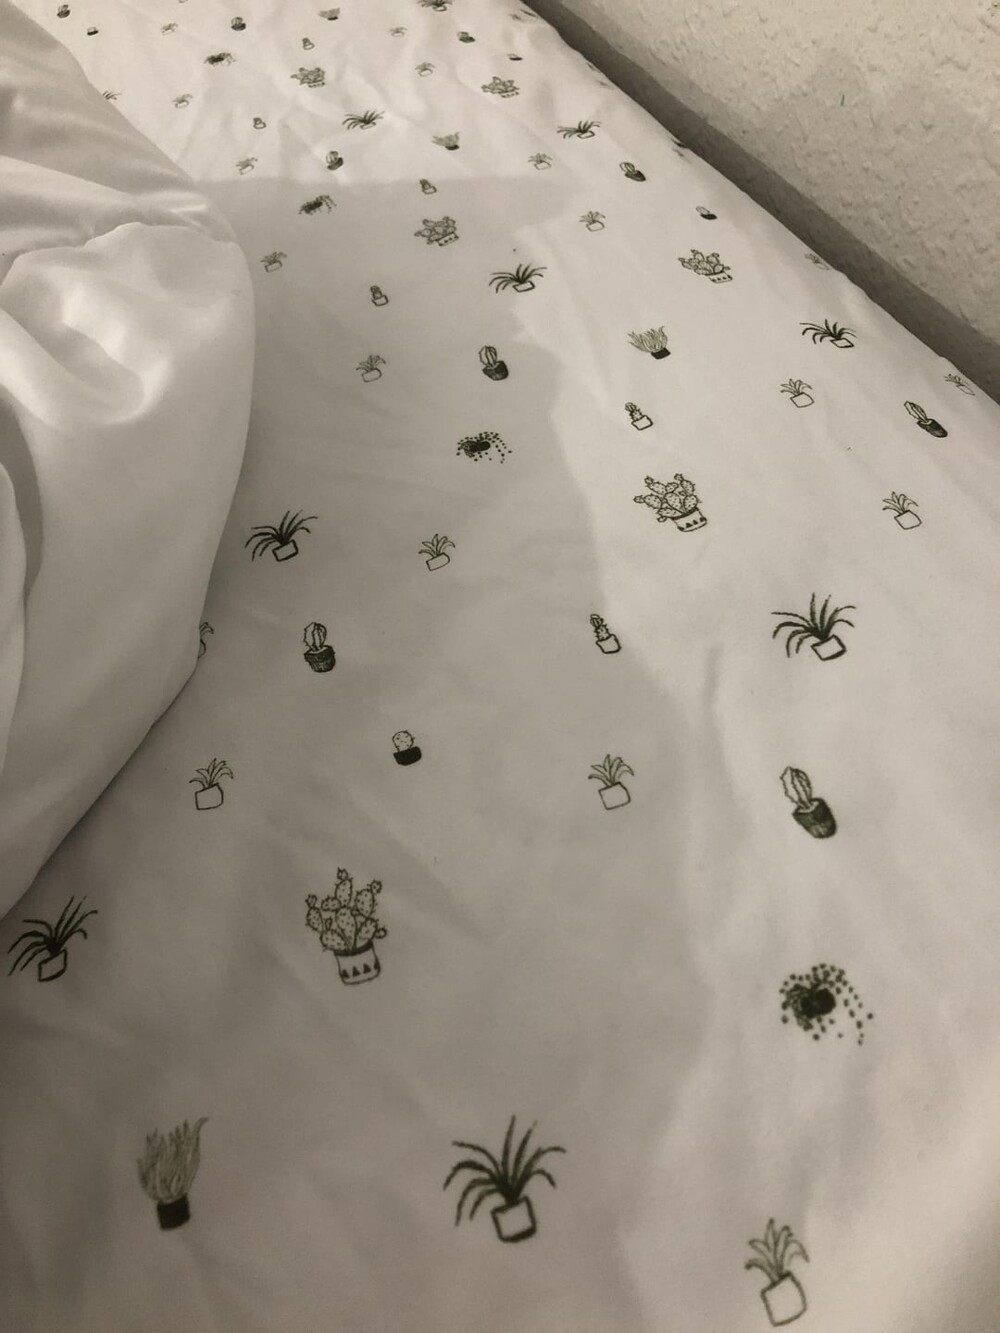 6. Я сначала подумал, что в моей гостиничной кровати сидят пауки